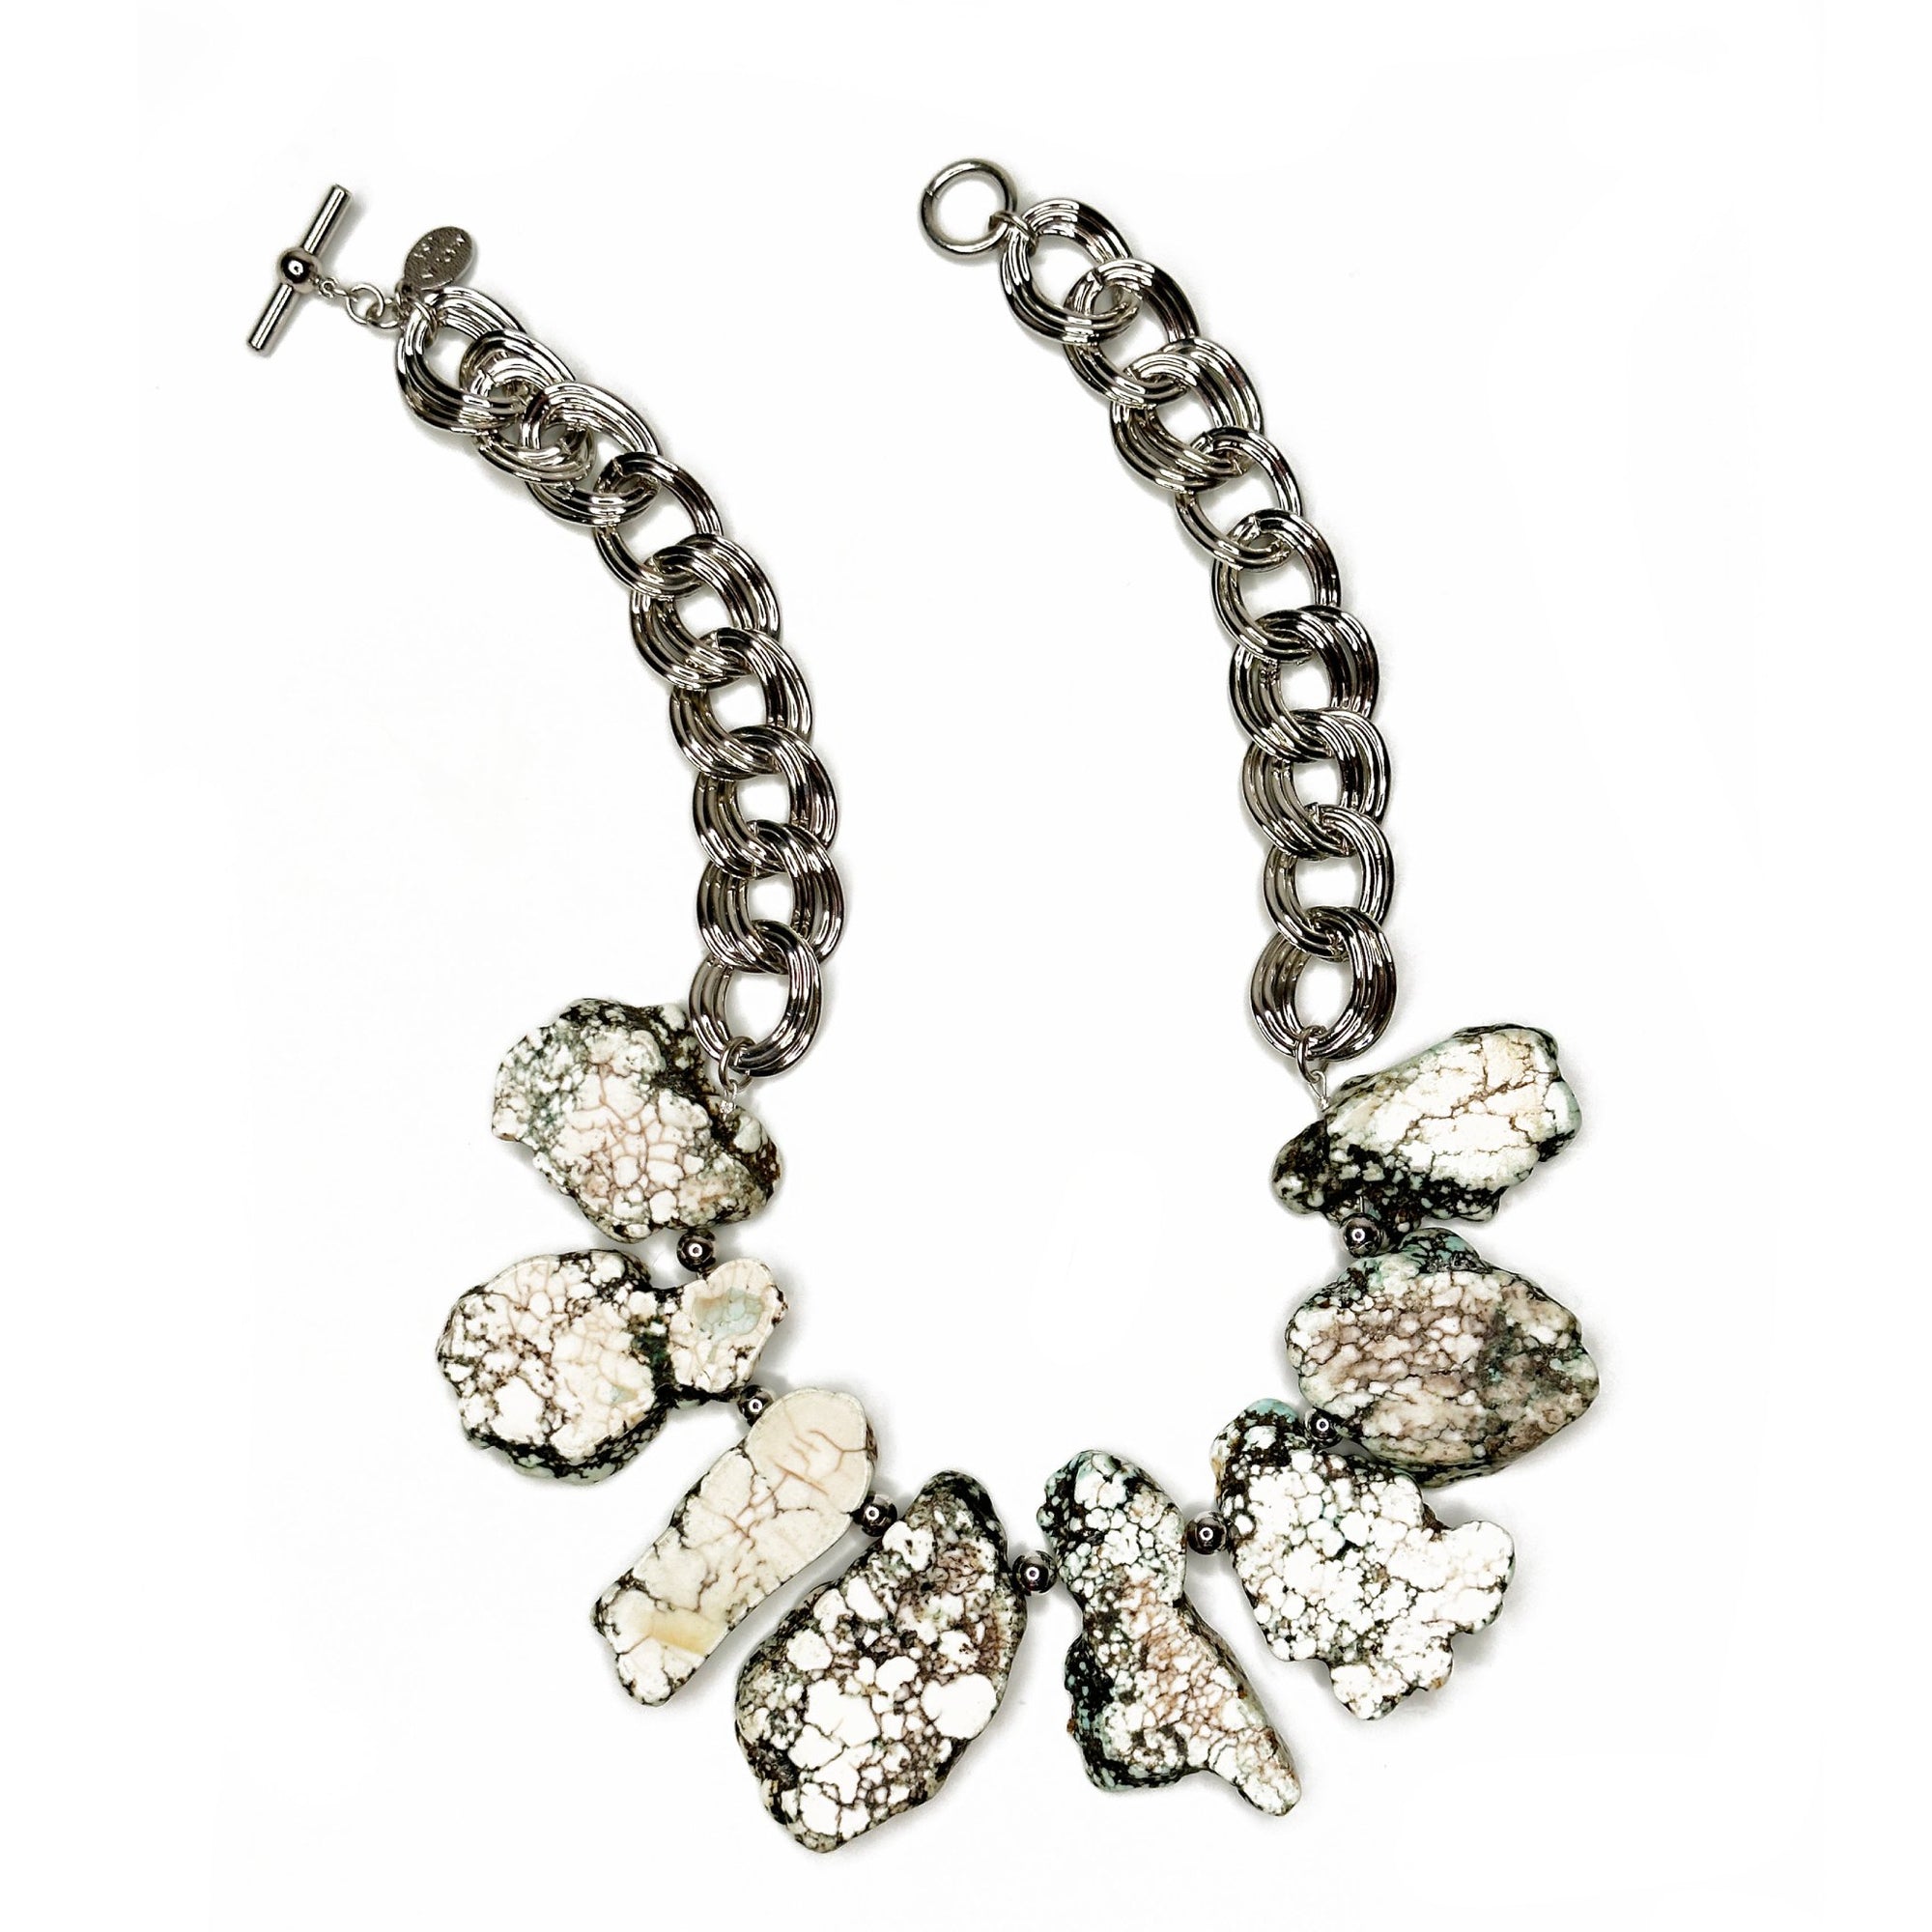 Howlite Slab Necklace | Erica Zap Designs